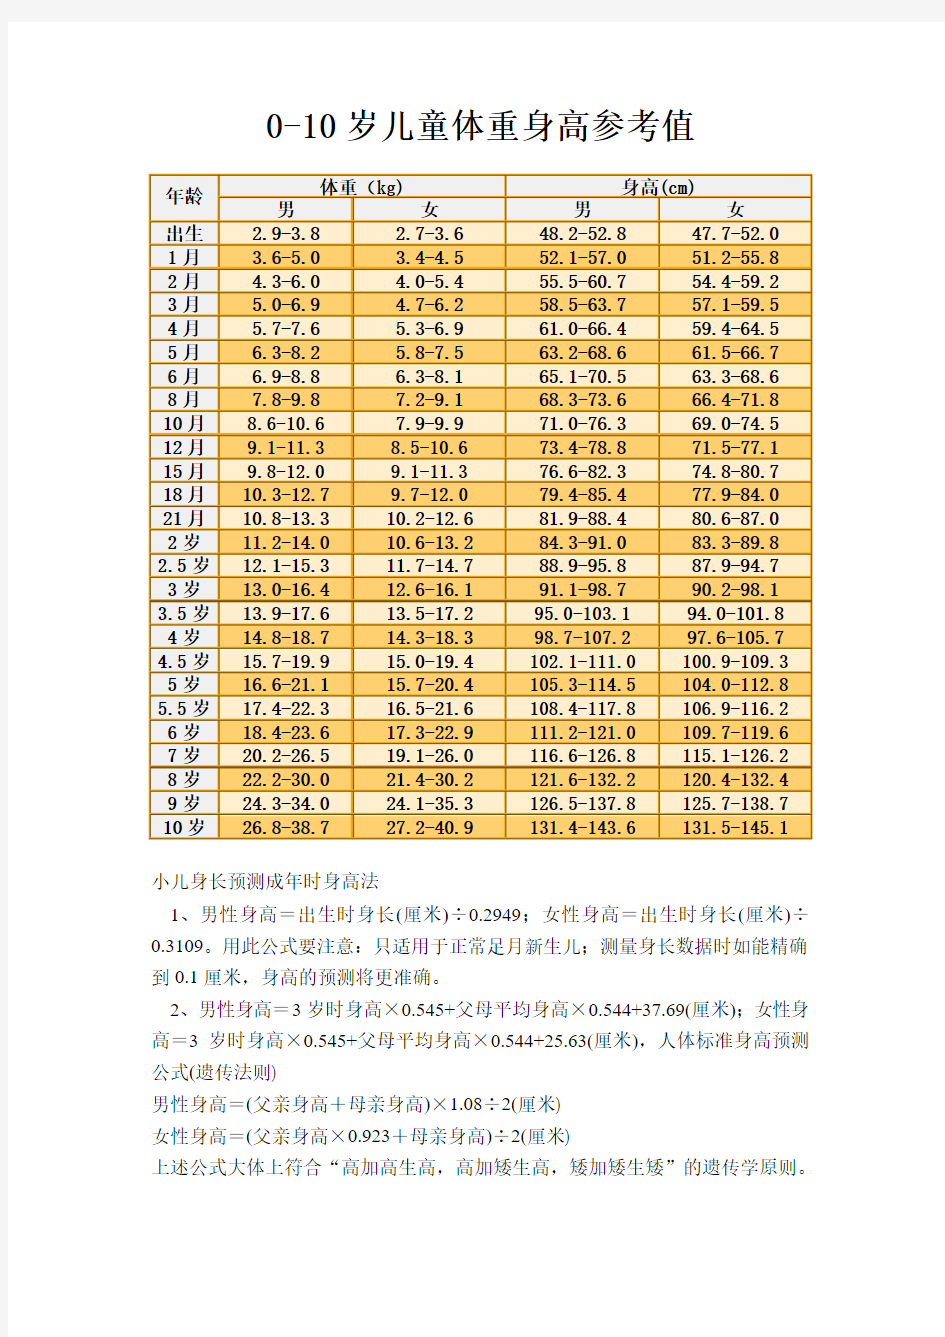 中国儿童标准身高体重对照表